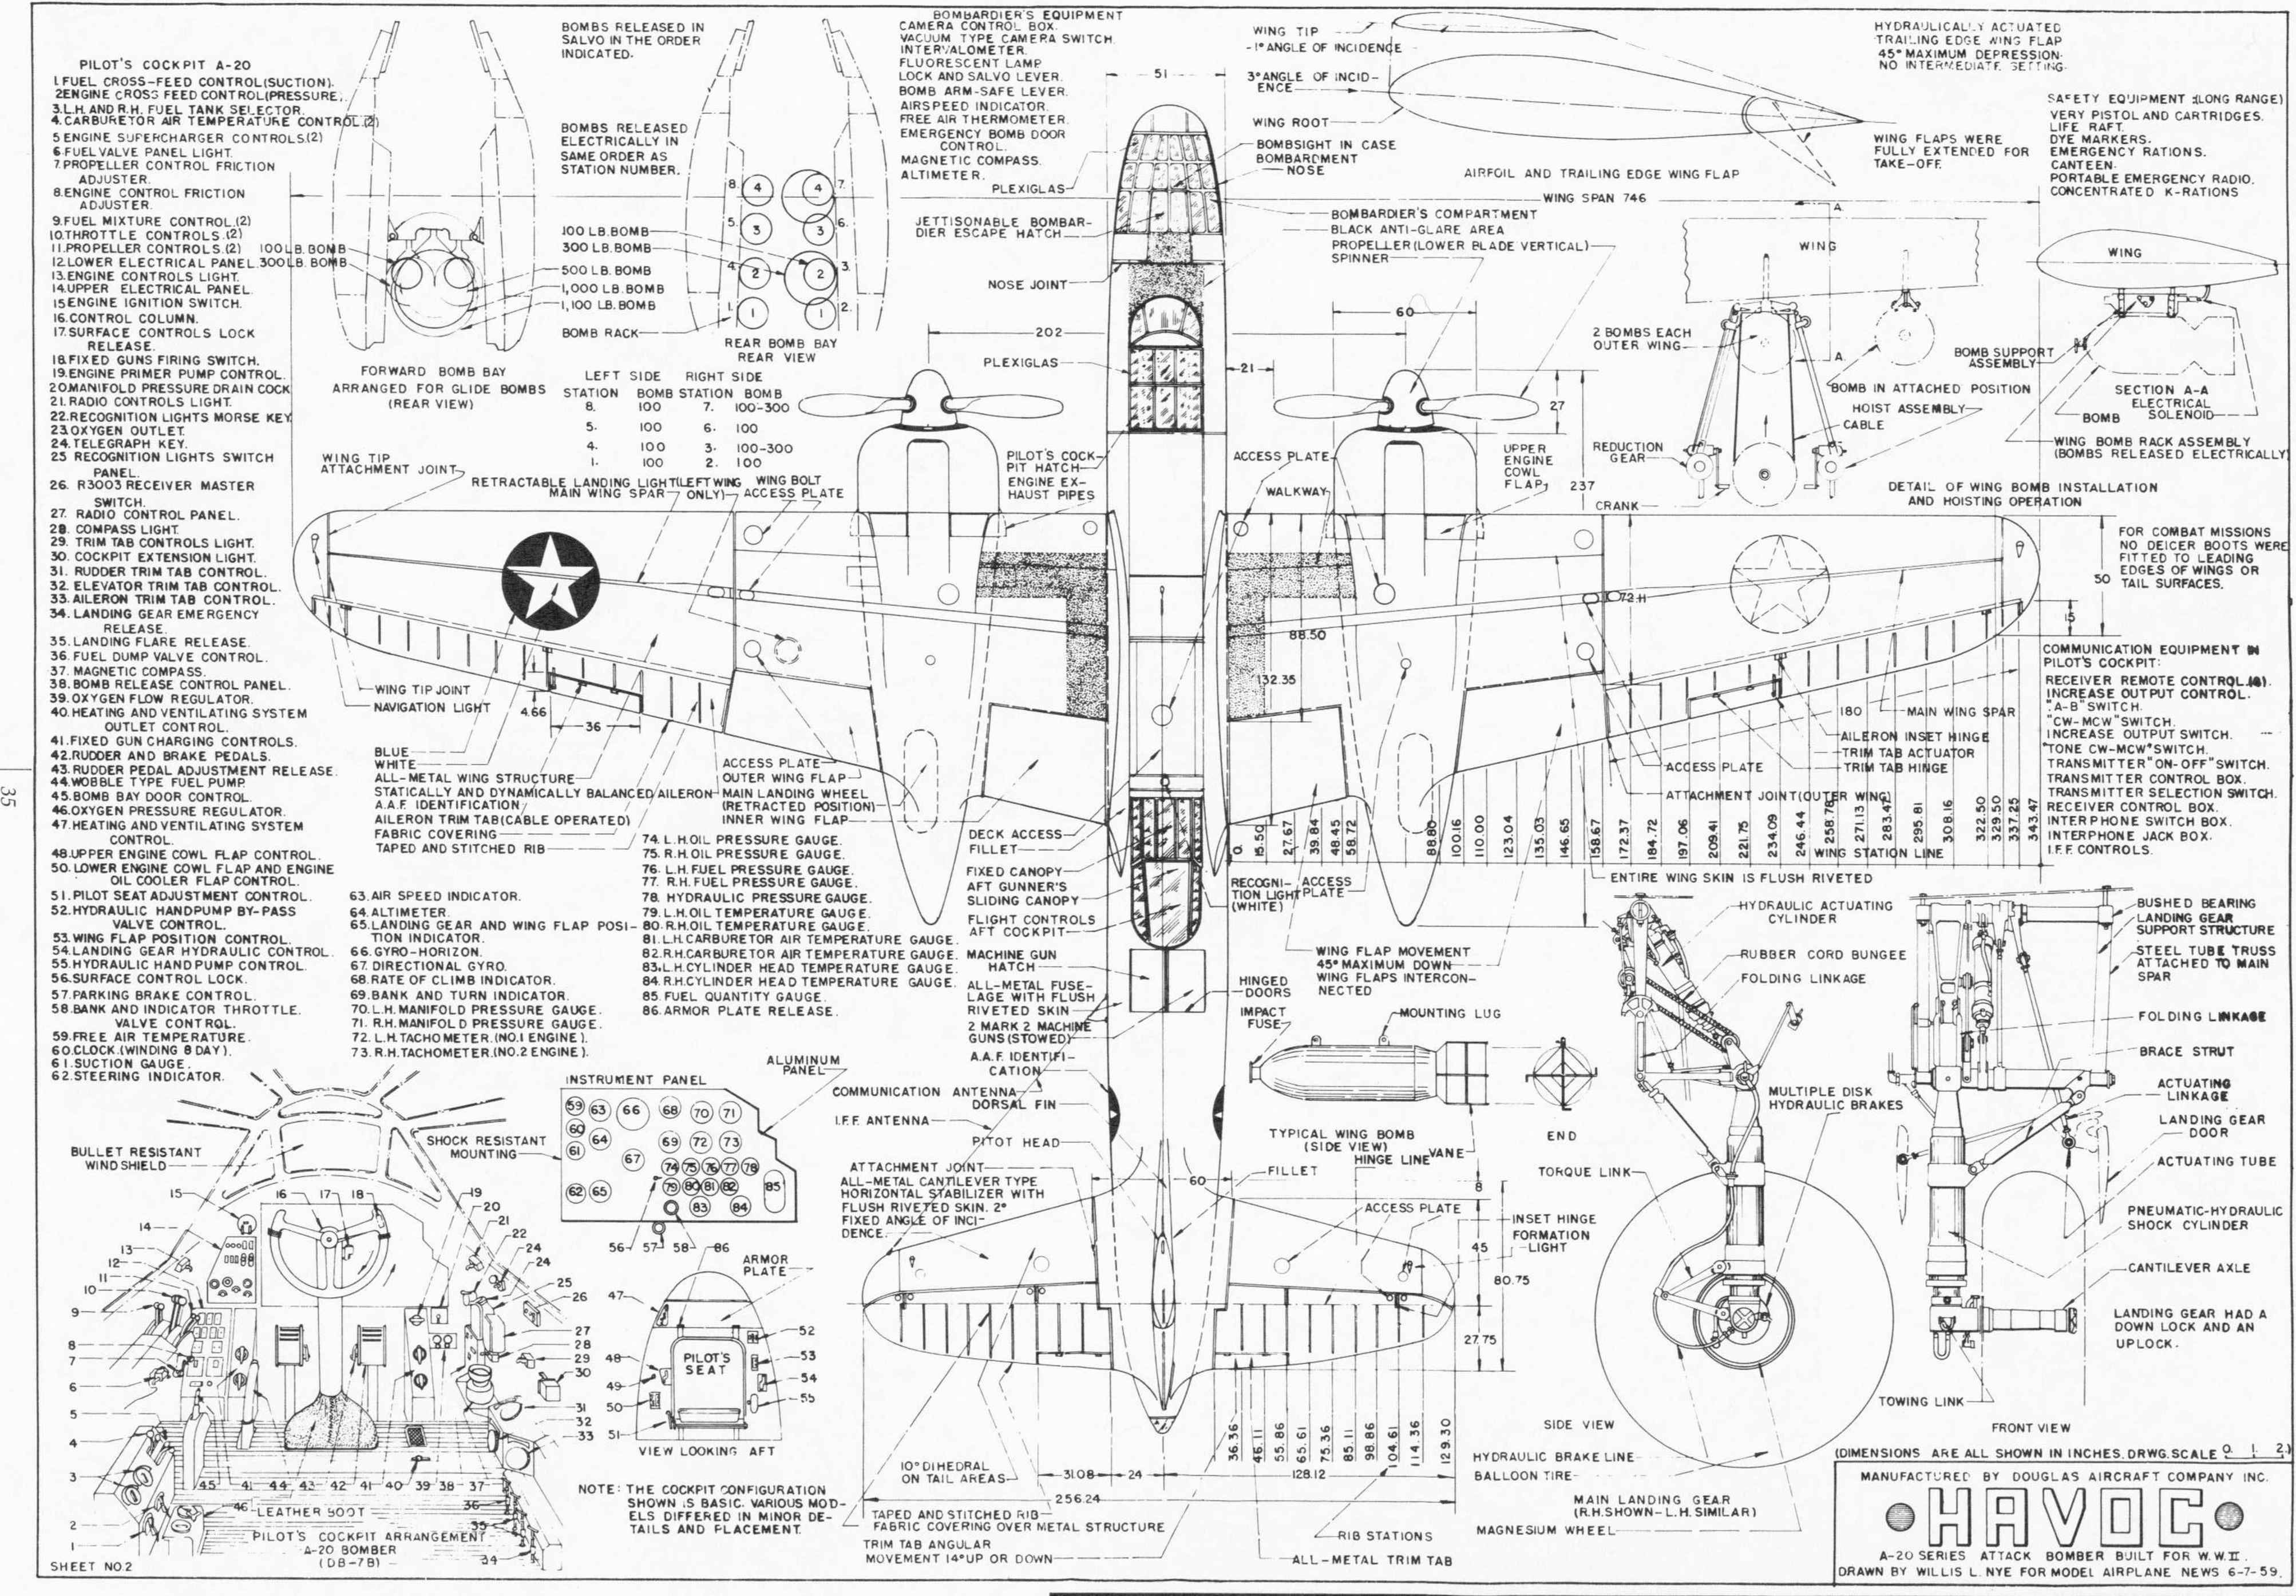 Aircraft Engineering Image Drawing